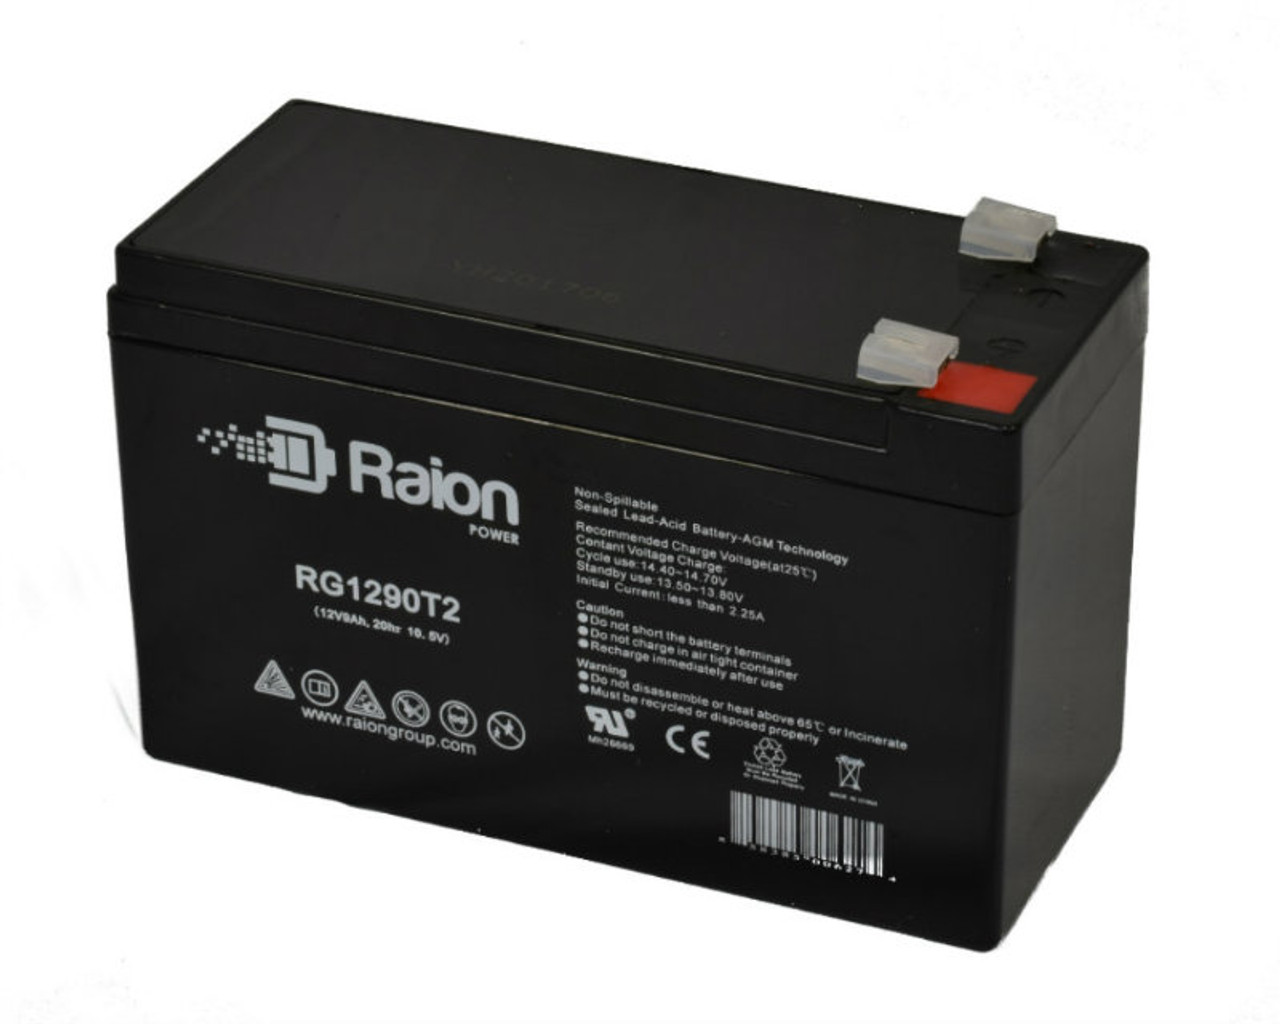 Raion Power RG1290T2 12V 9Ah AGM Battery for Saft 47786101000